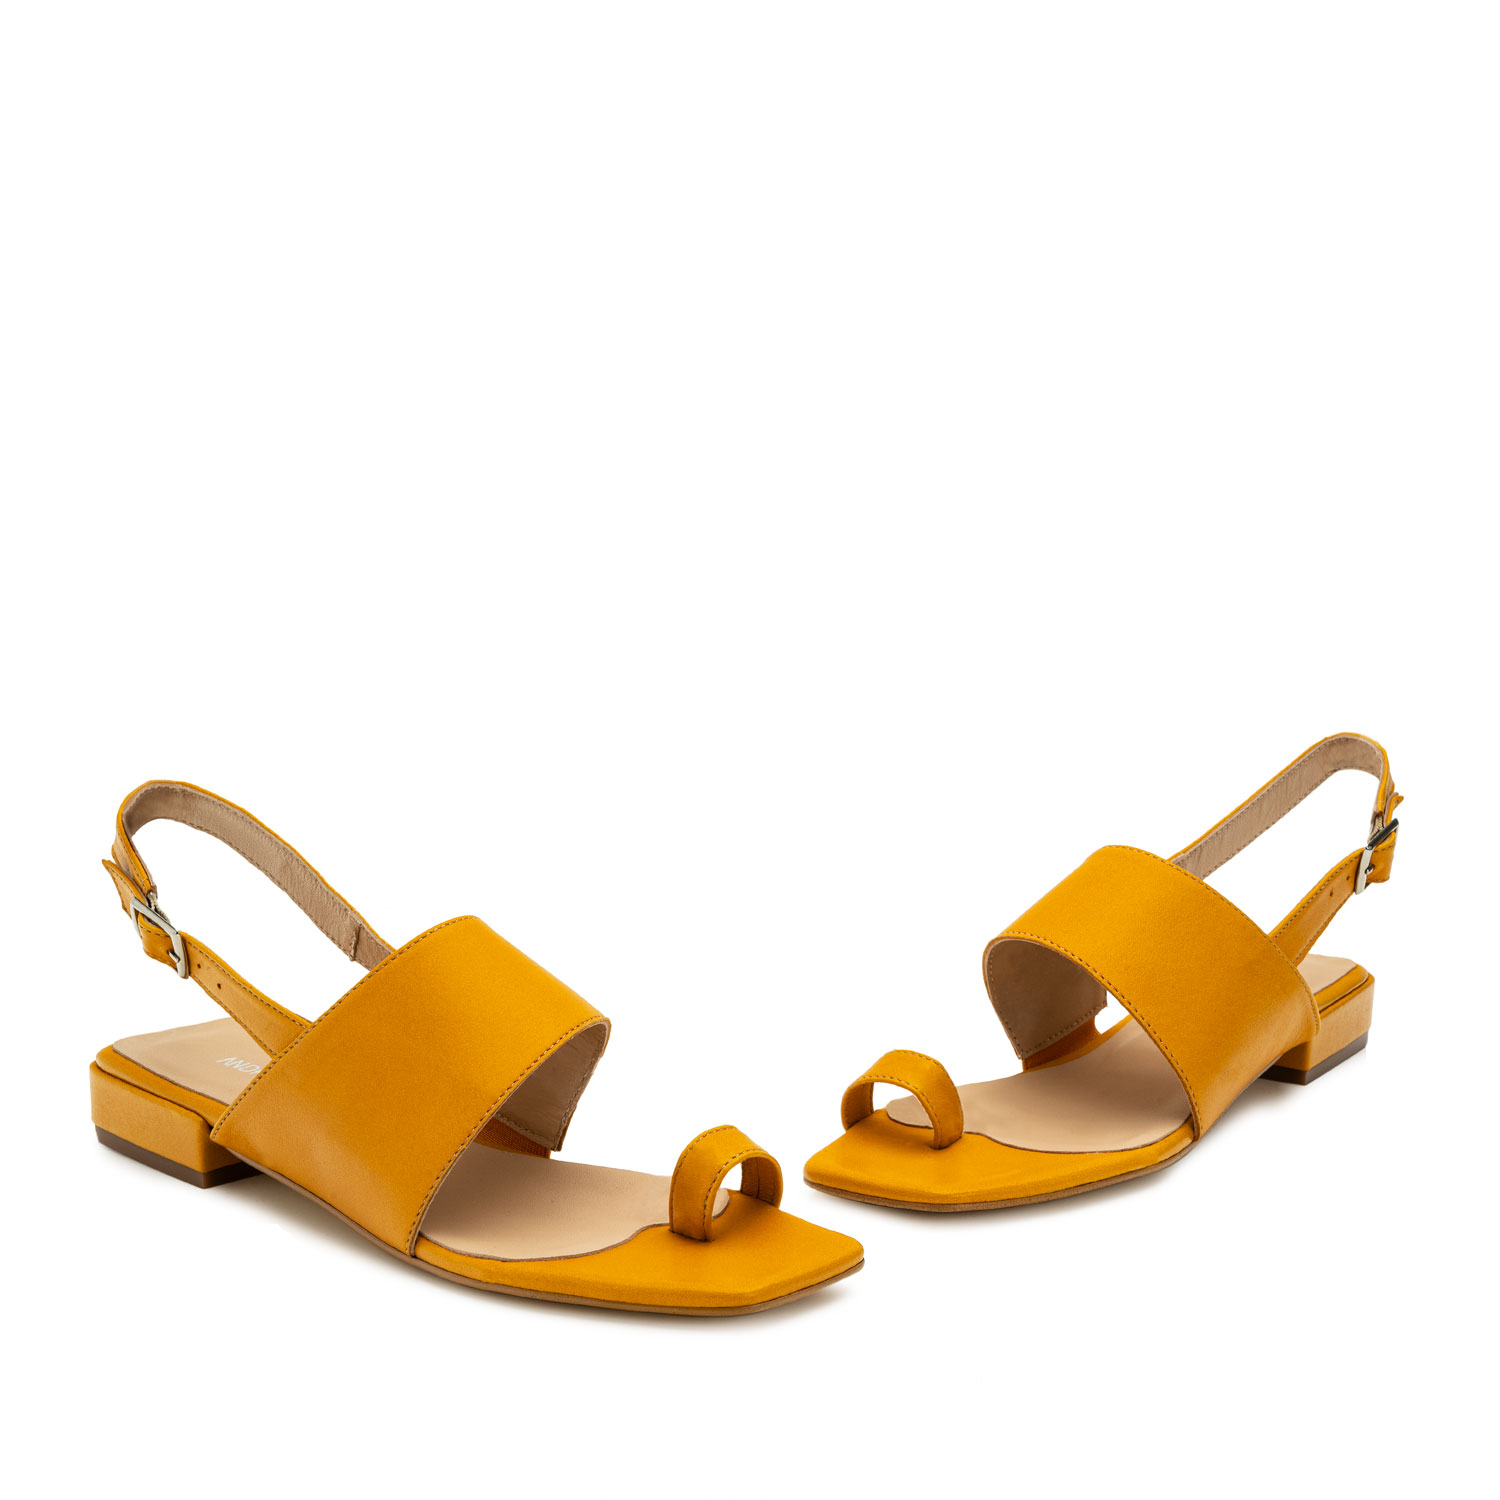 Sandalen aus gelbem Leder - MADE IN SPAIN - 